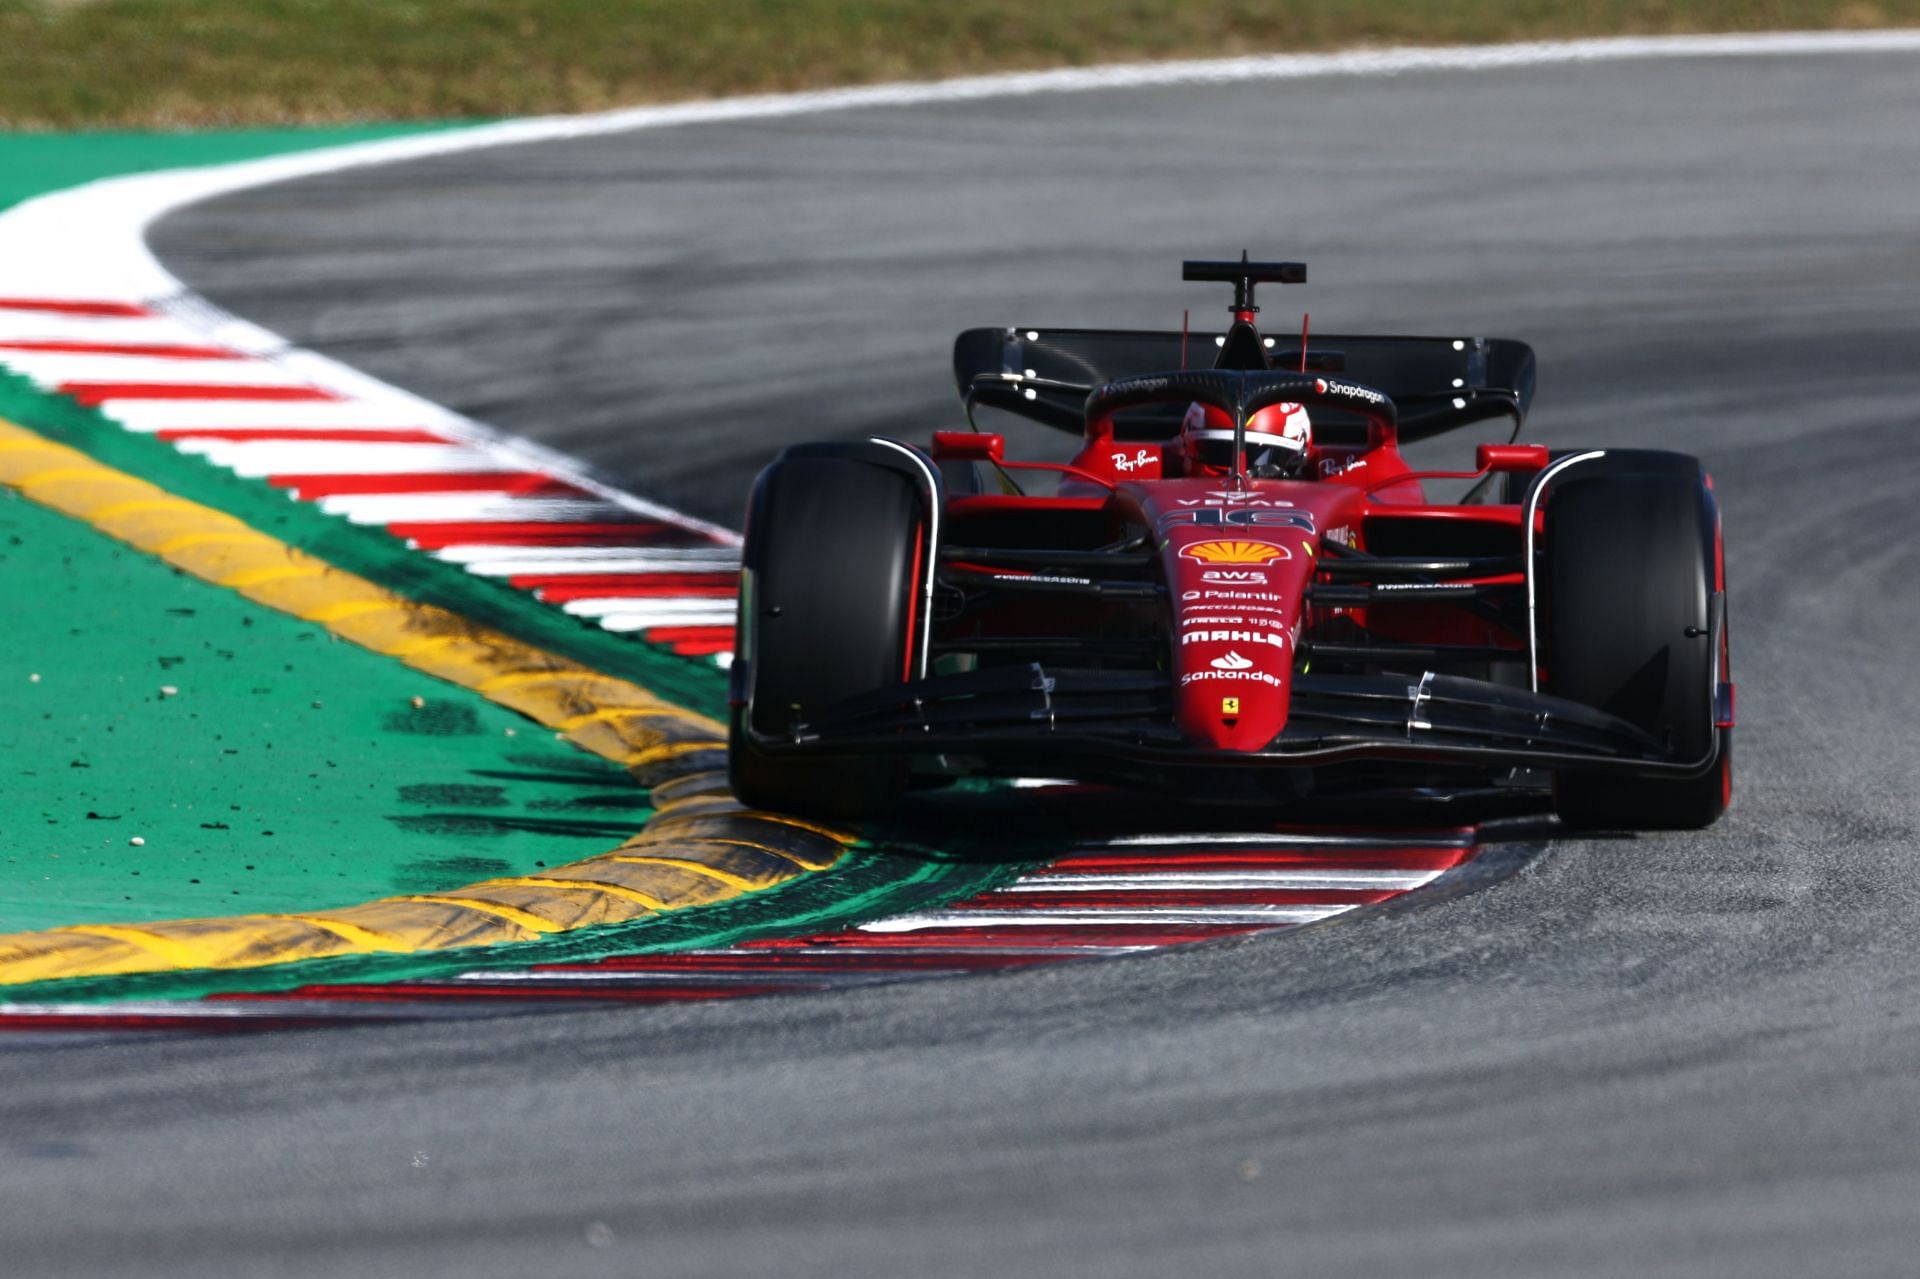 Ferrari looks like the car to beat in Barcelona